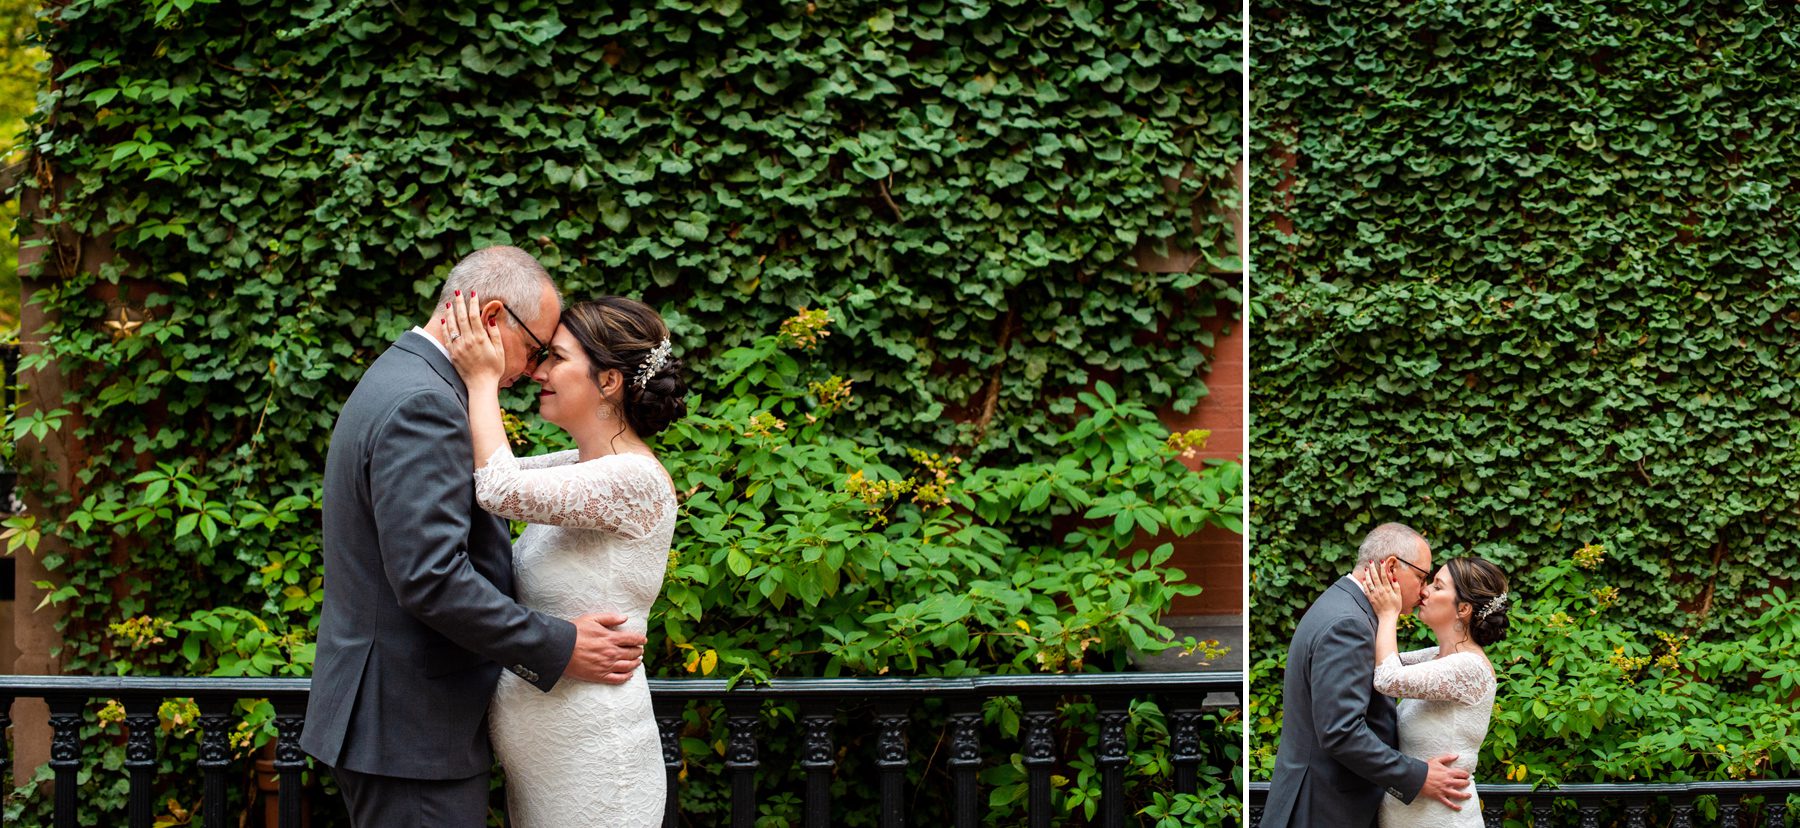 Best Neighborhoods for Wedding Photos NYC